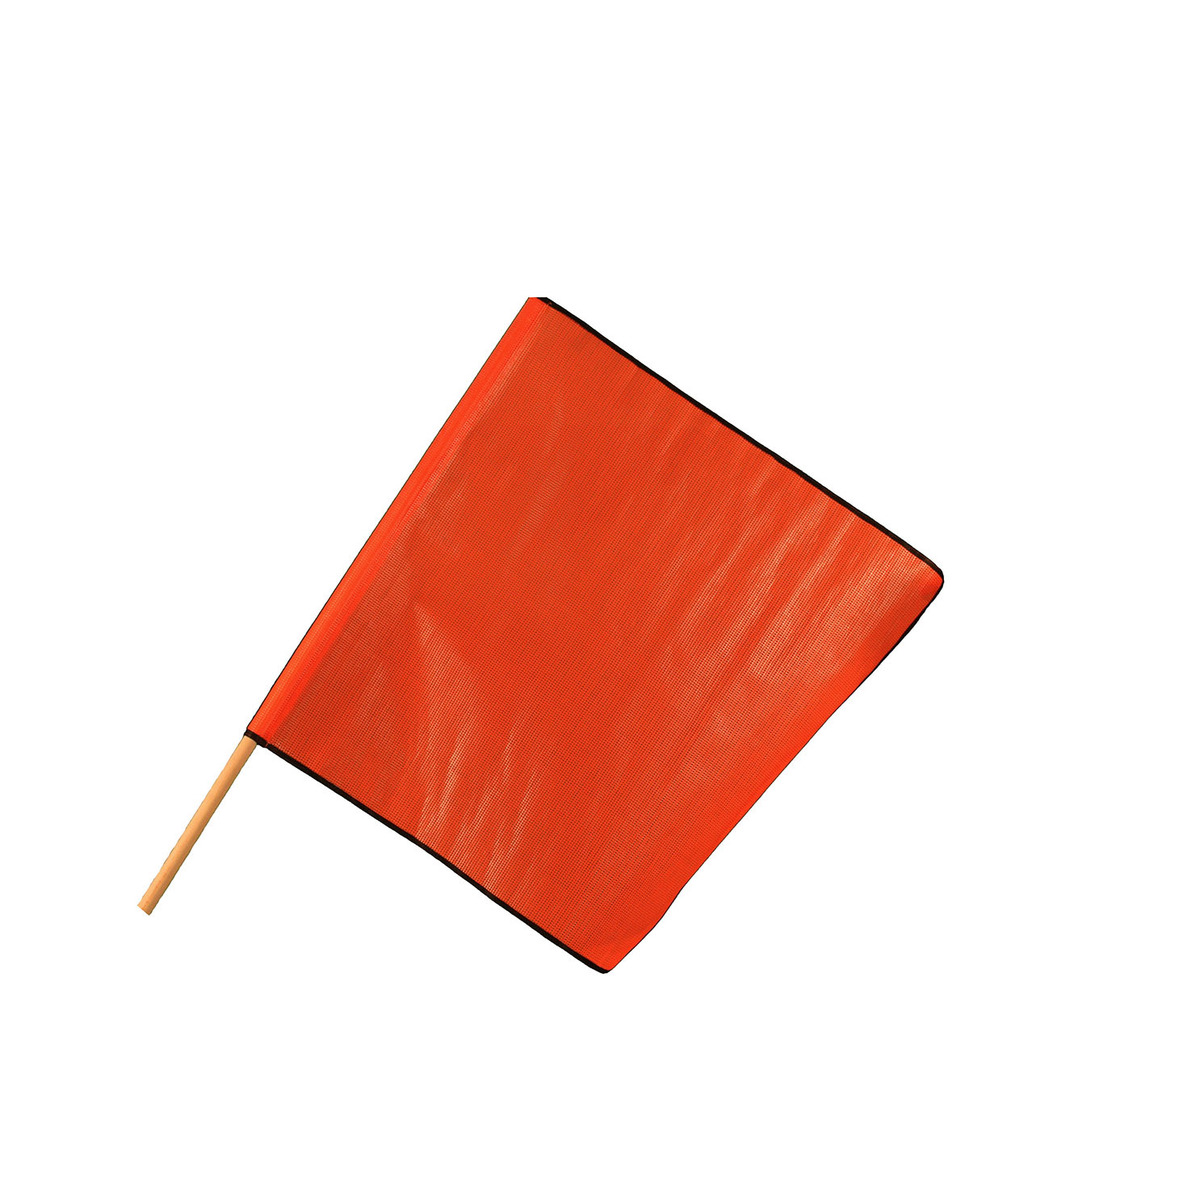 Cortina Safety Products Hi-Viz Red/Orange Mesh Warning Flag